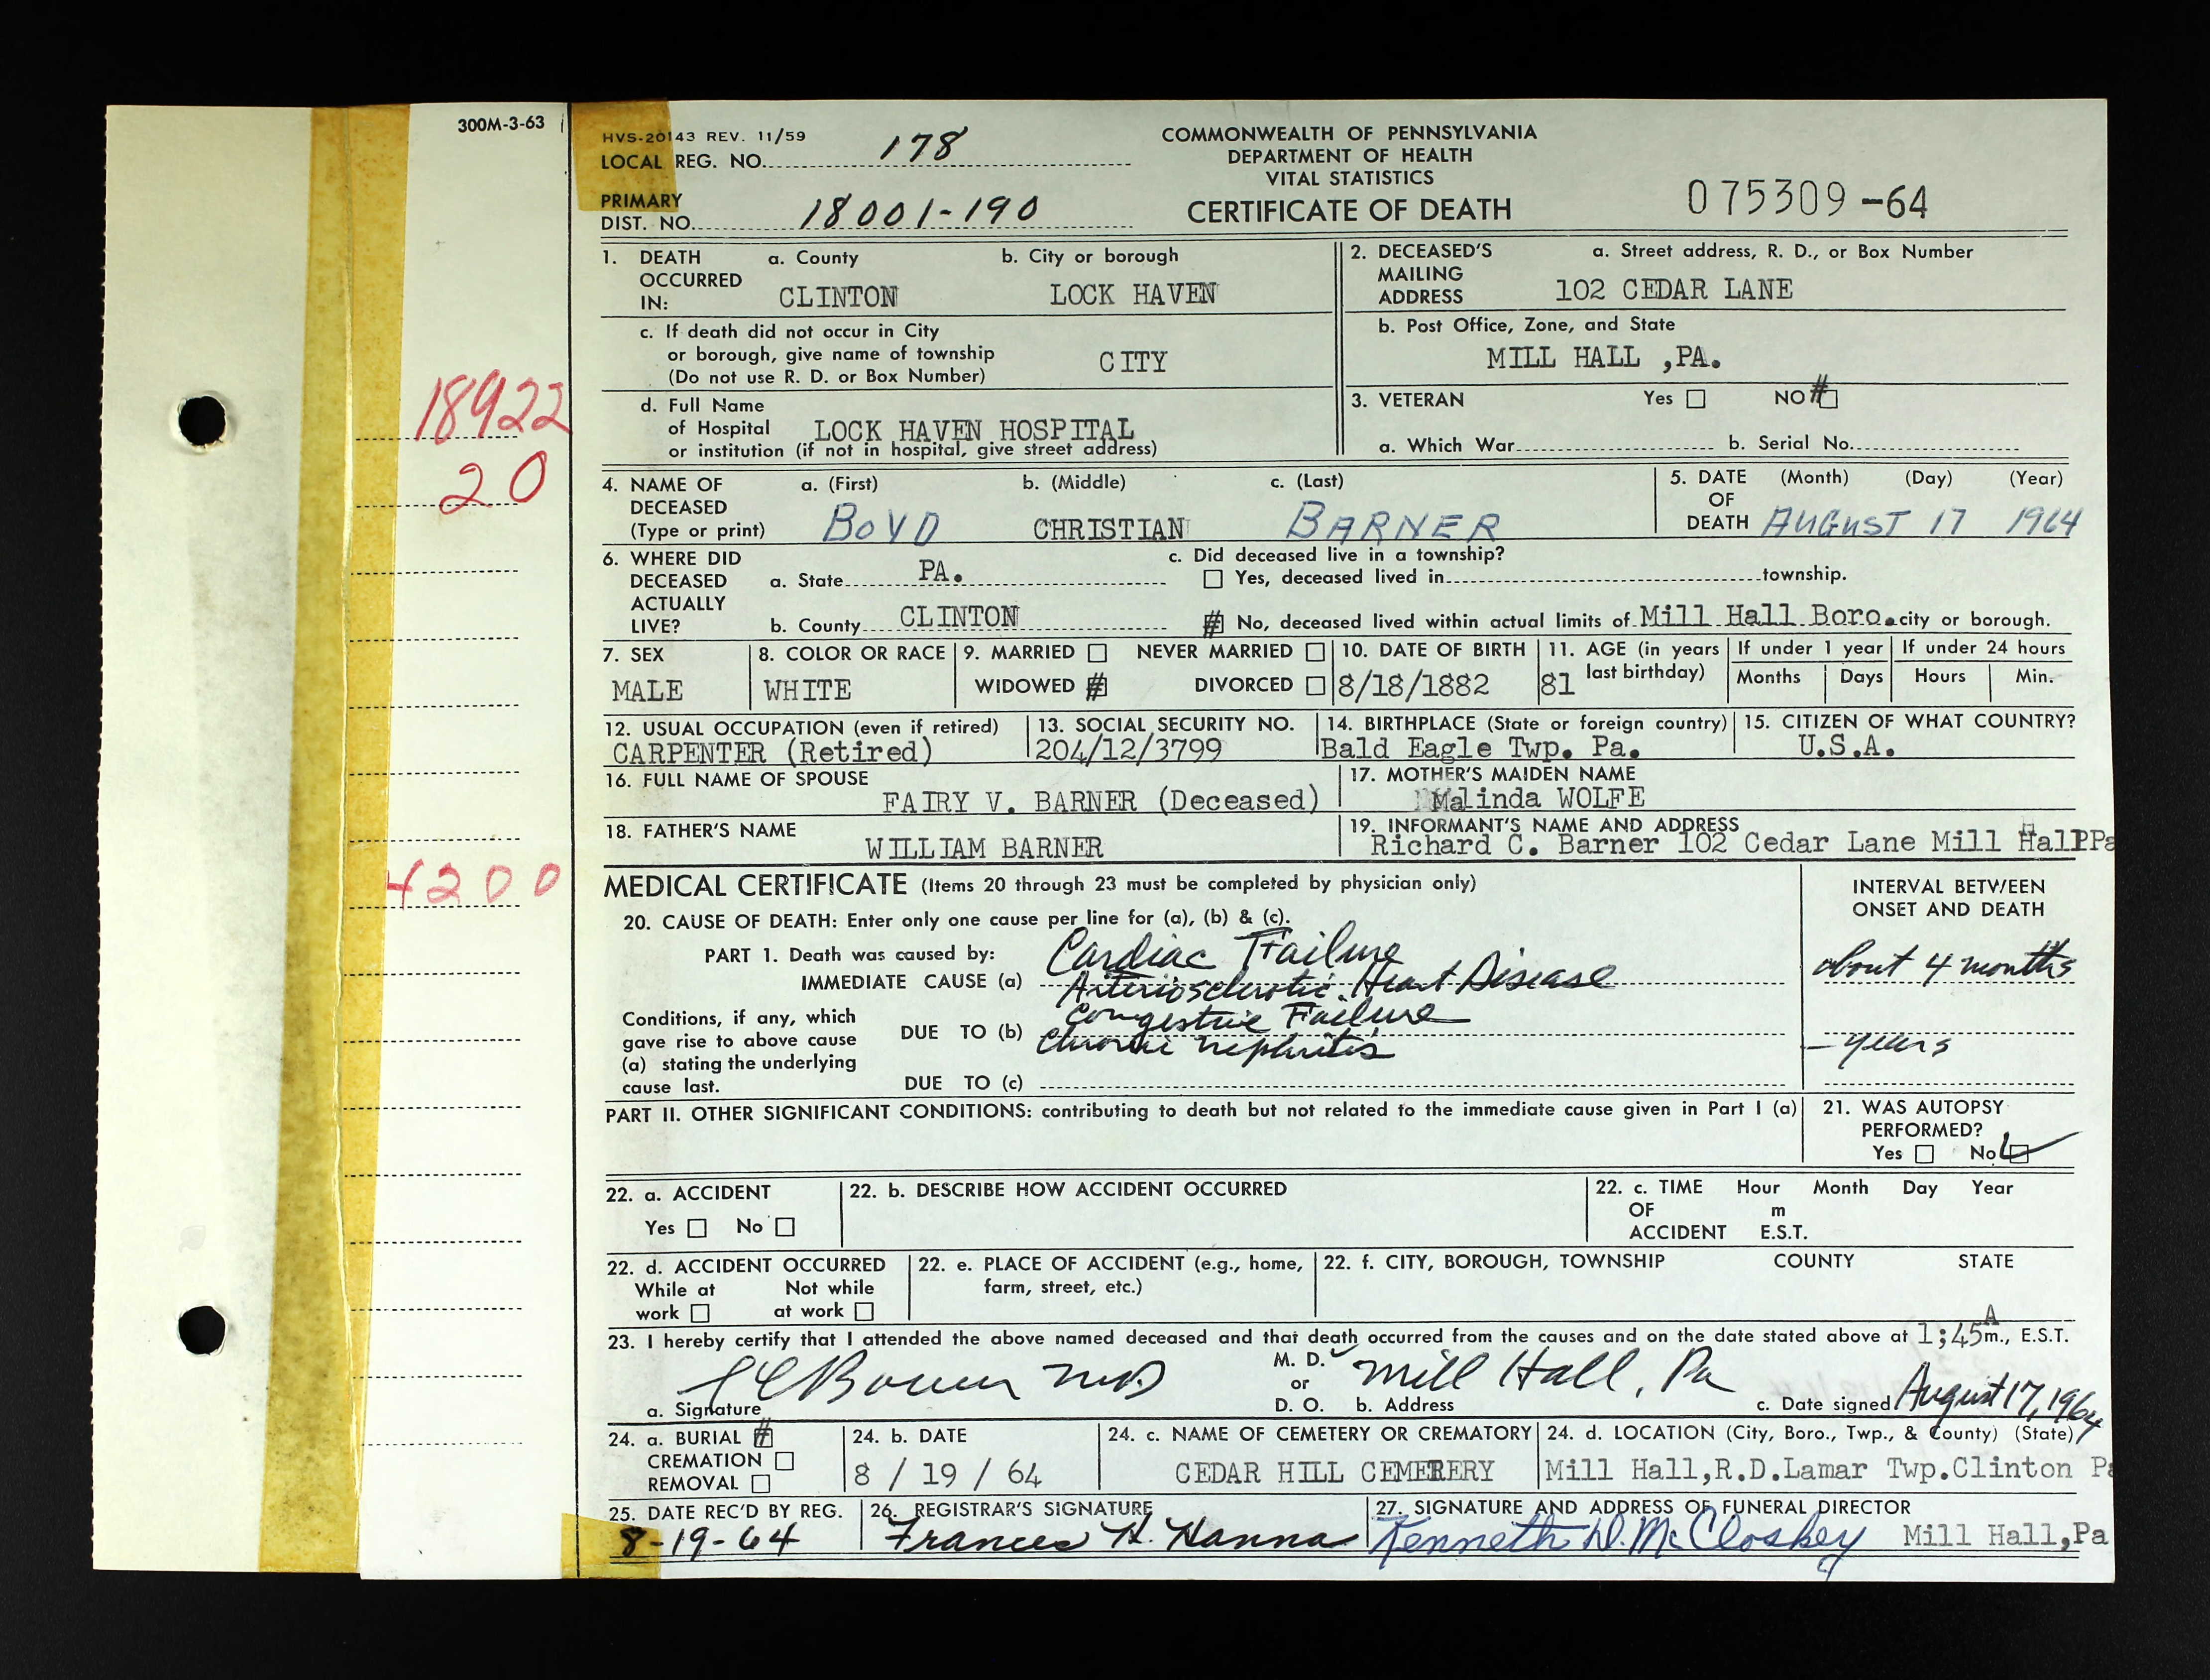 Boyd Christian Barner death certificate